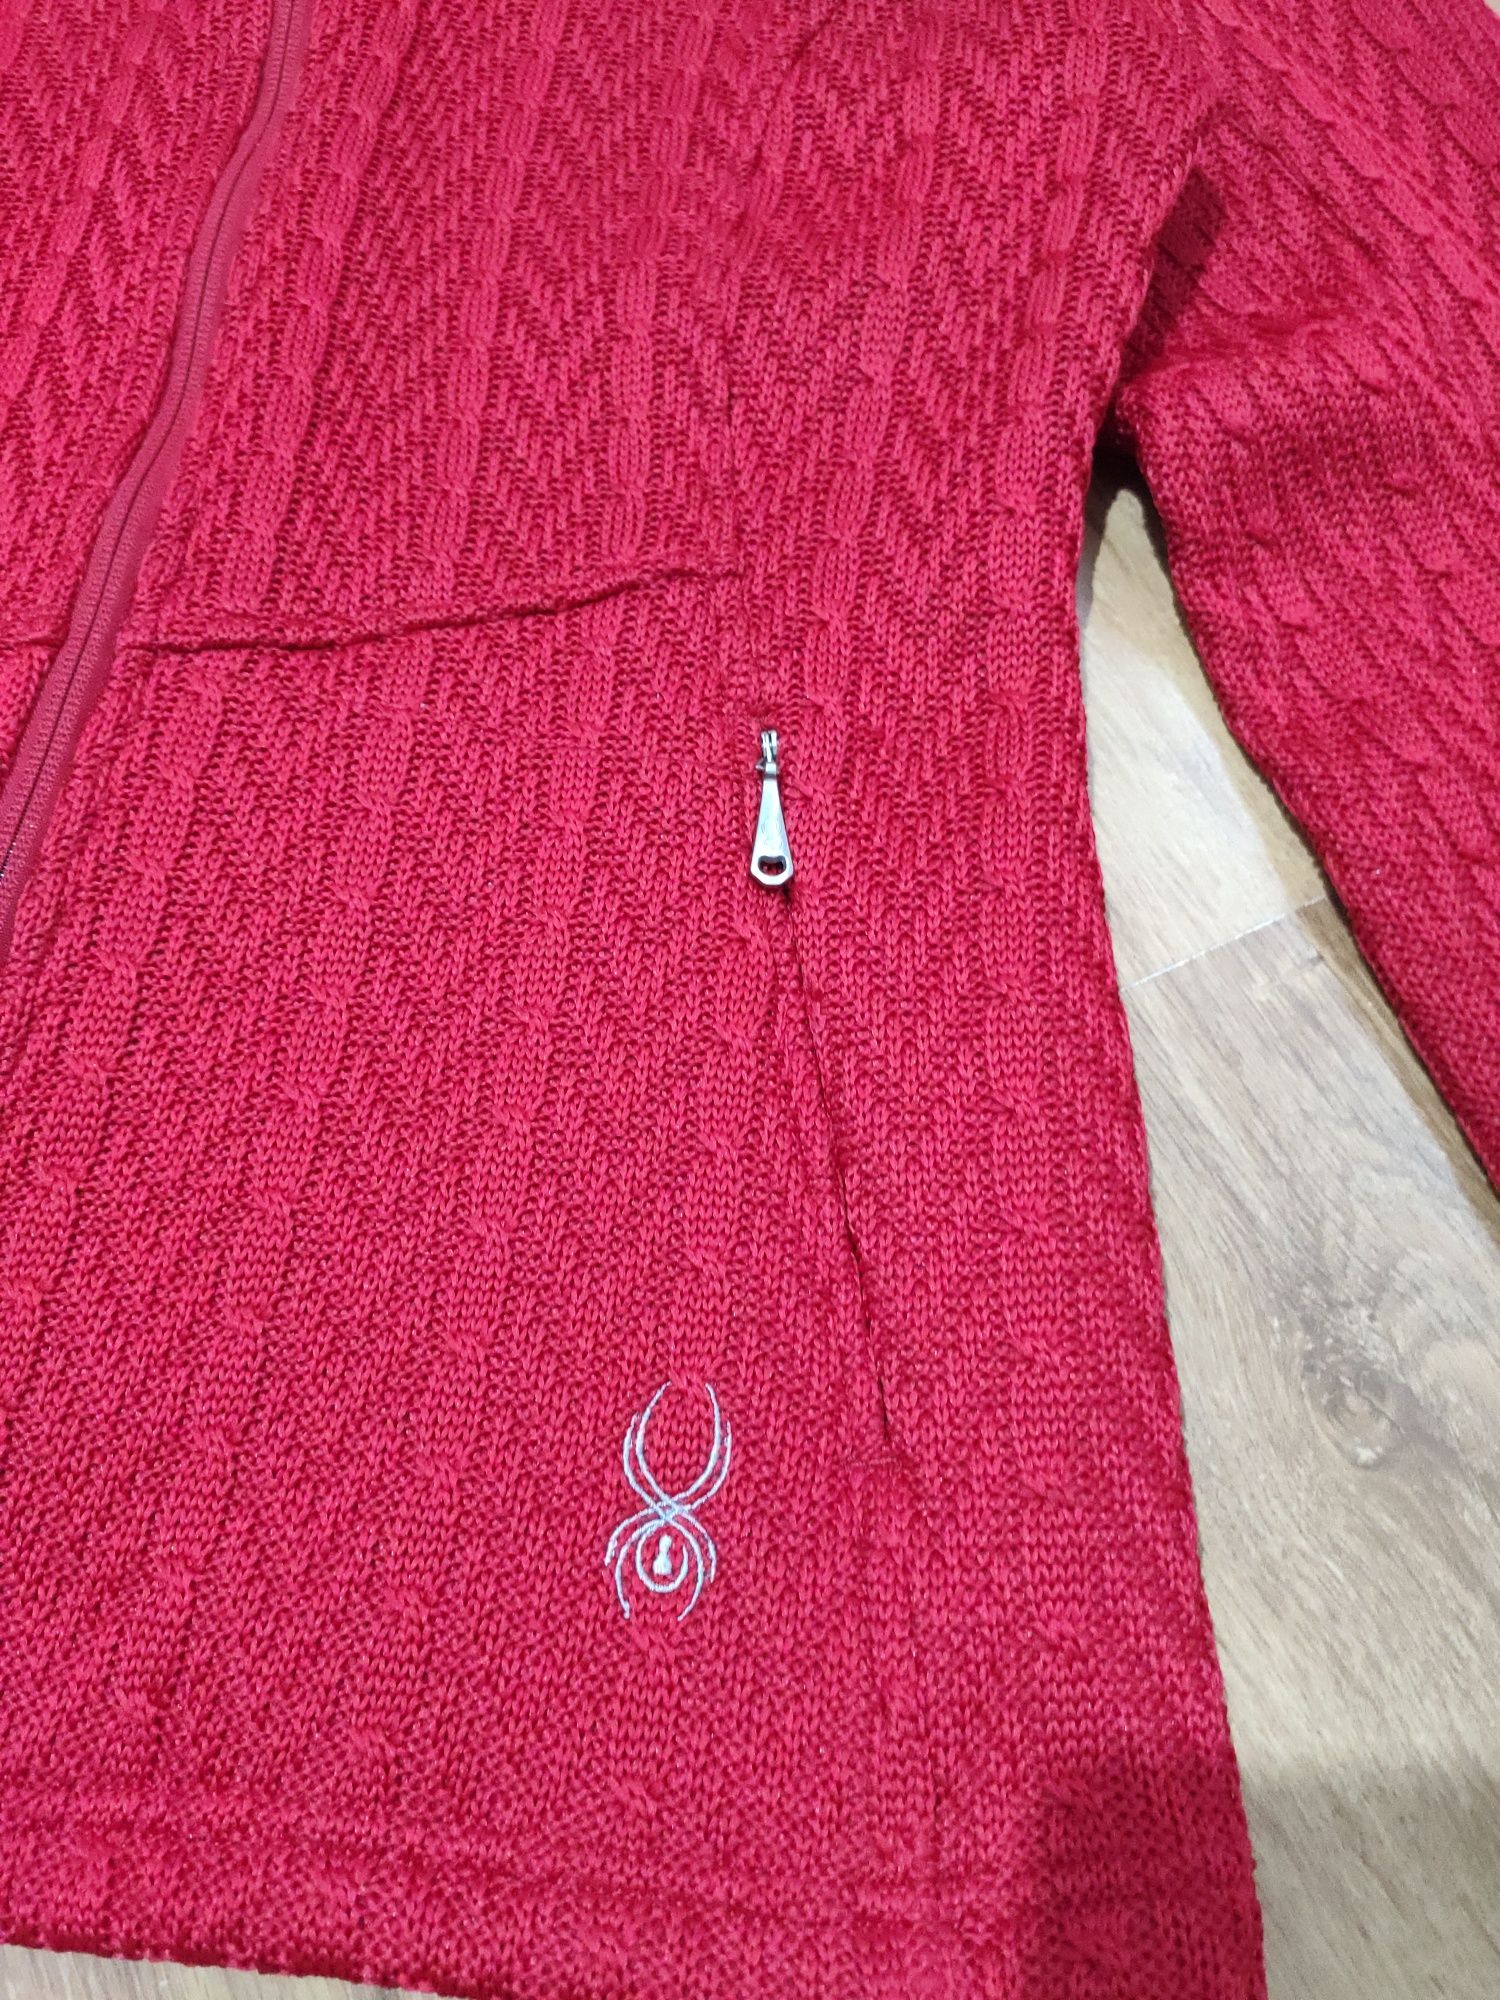 Bluza dama Spyder Core Sweater mărimea L